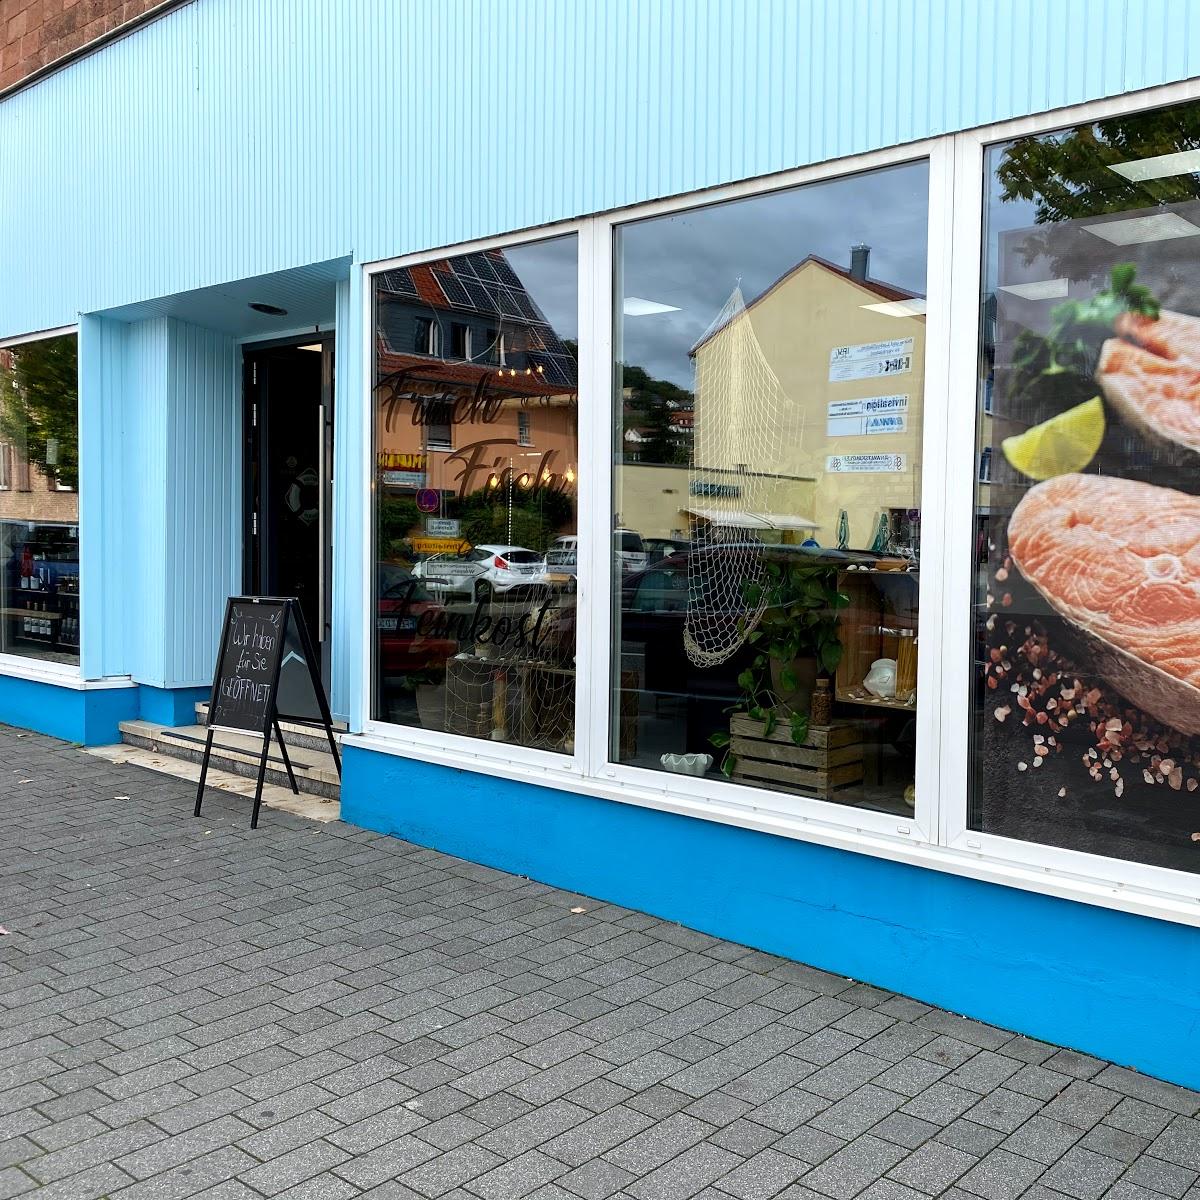 Restaurant "Fish House" in Büdingen